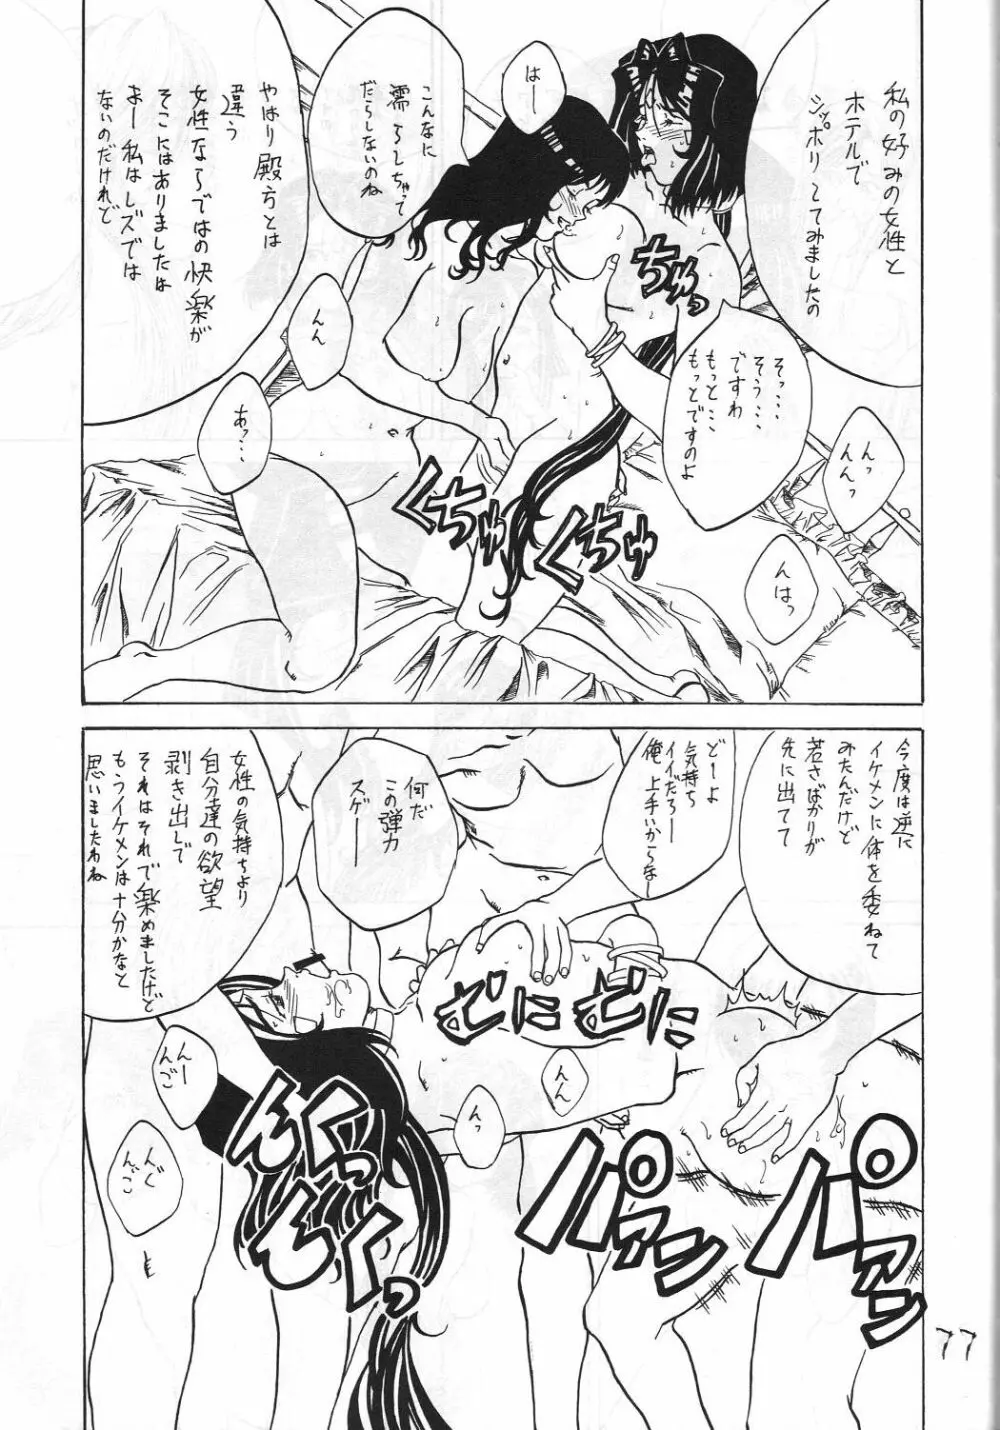 機関車は俺のジョンソン in my life (美竹) Eanakuoto (ああっ女神さまっ) - page78